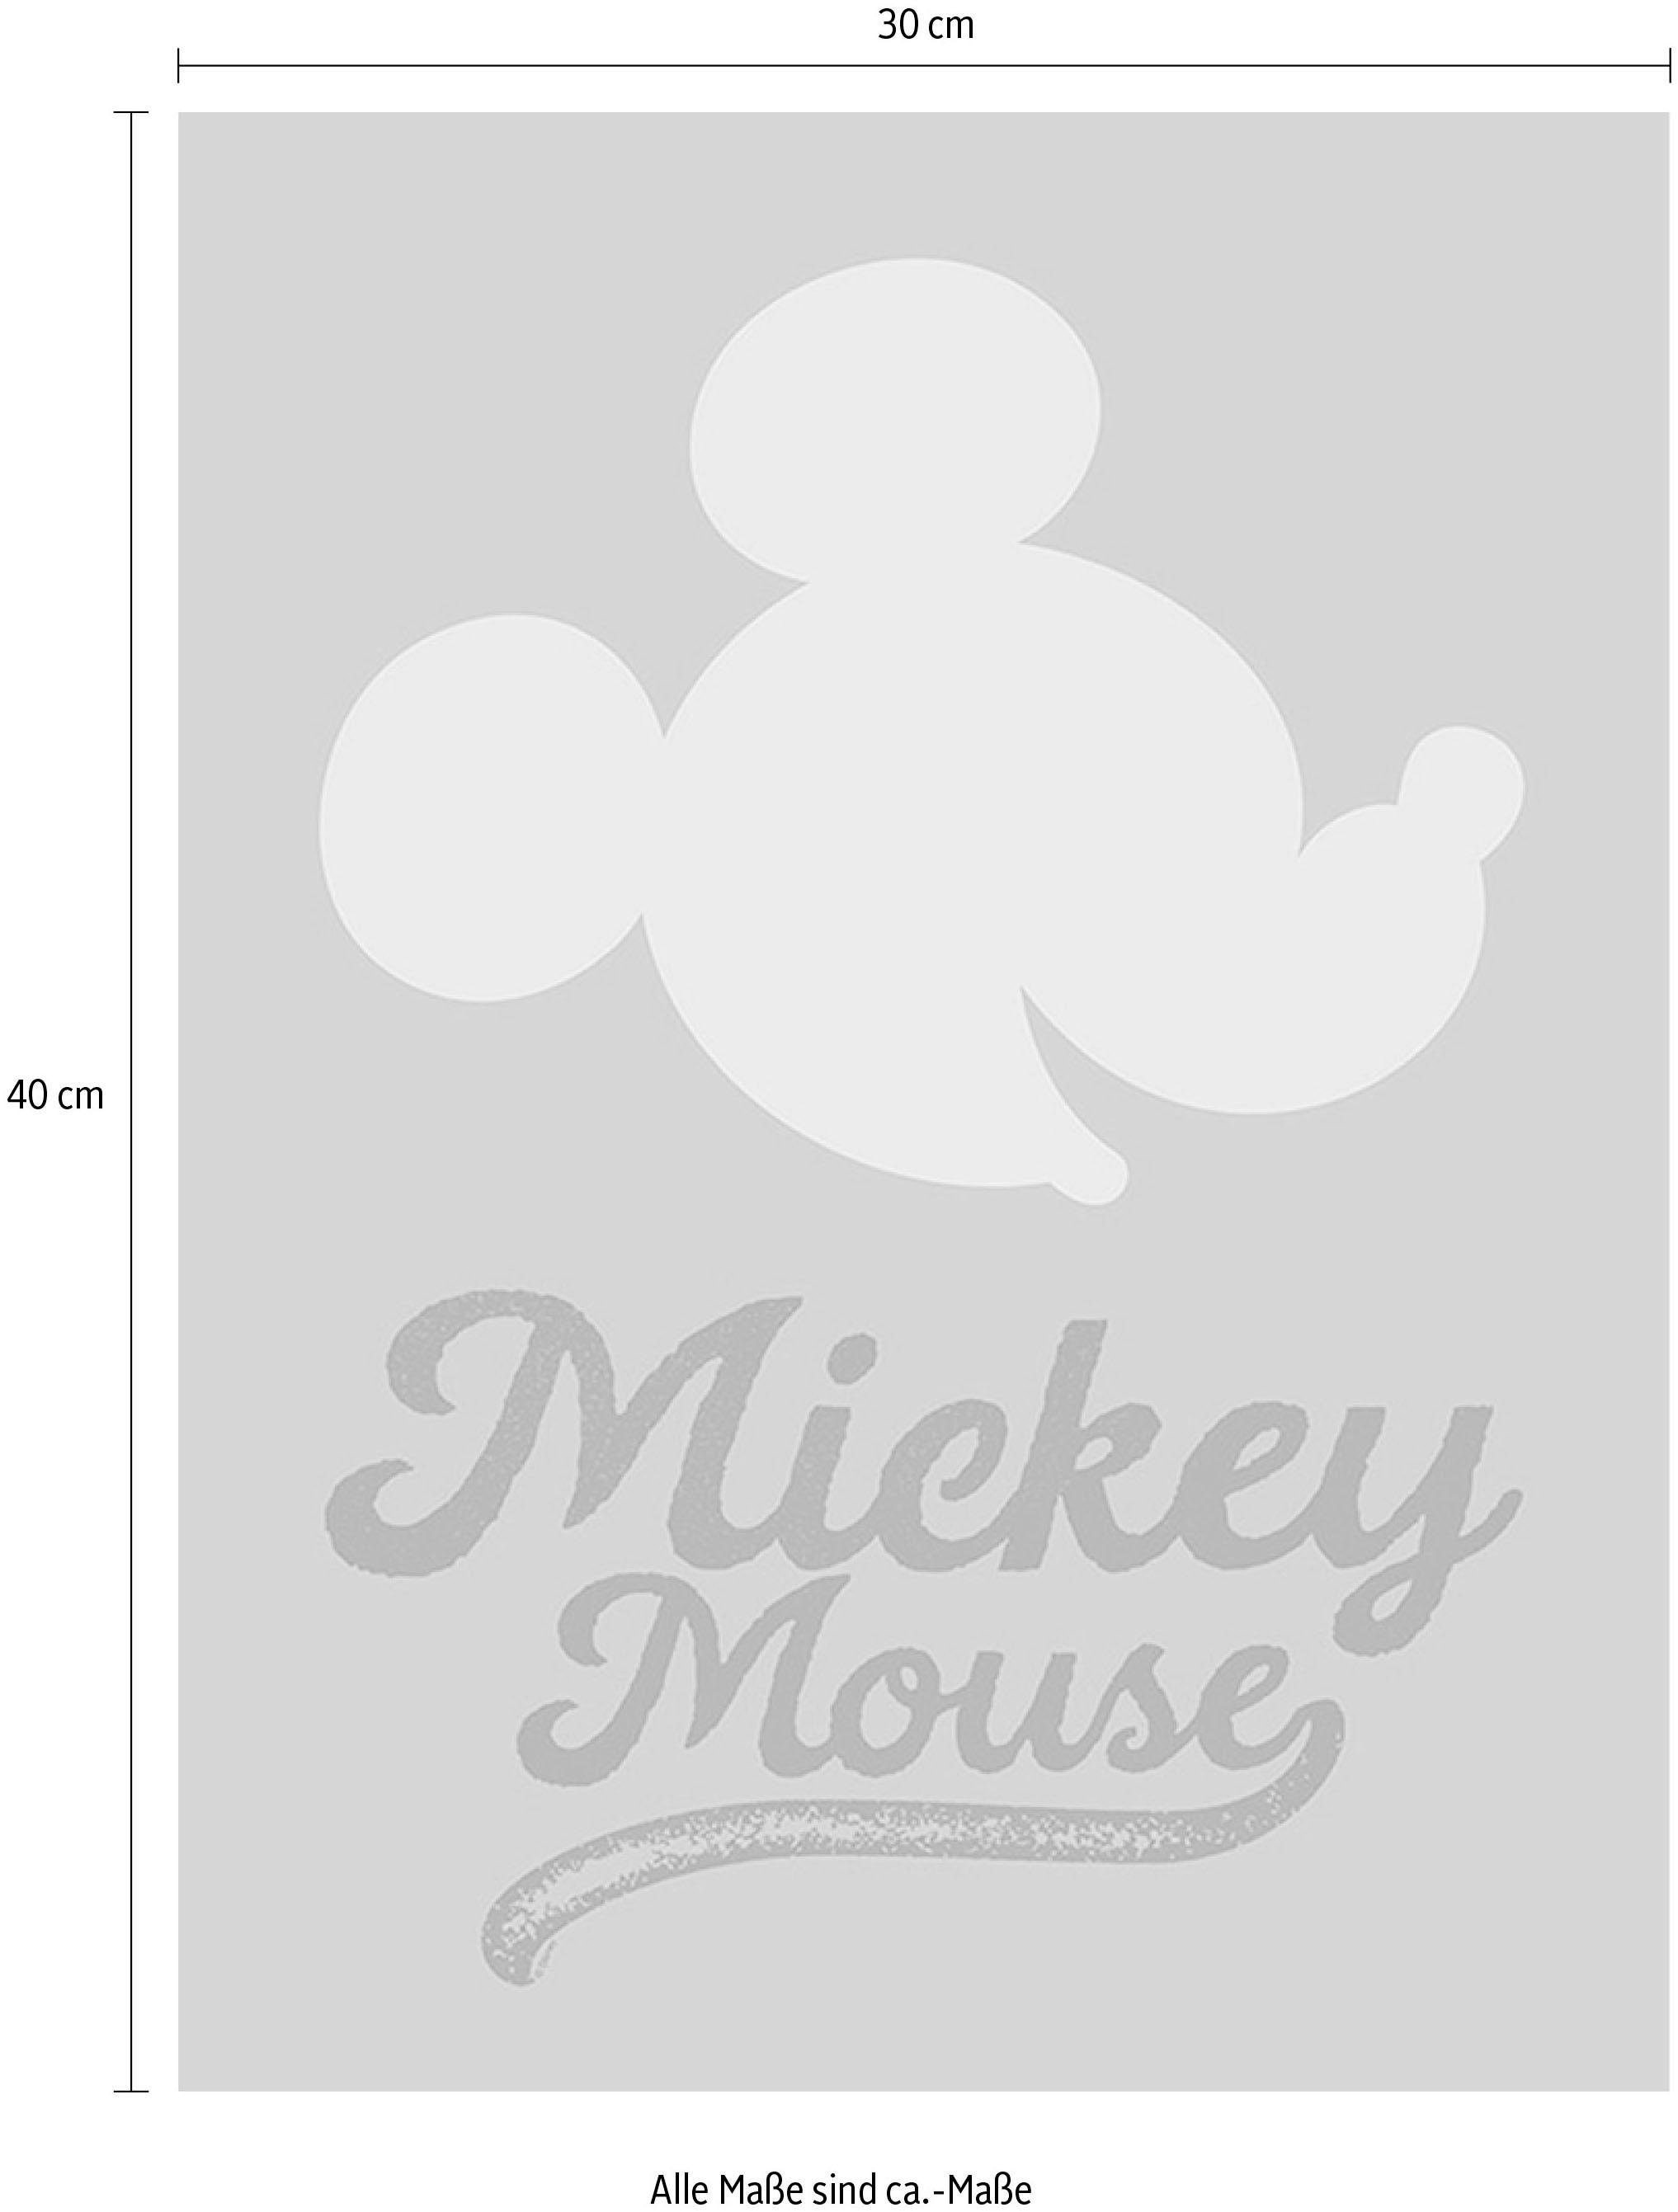 Komar Poster »Mickey Mouse Green Head«, Disney, (1 St.), Kinderzimmer, Schlafzimmer, Wohnzimmer